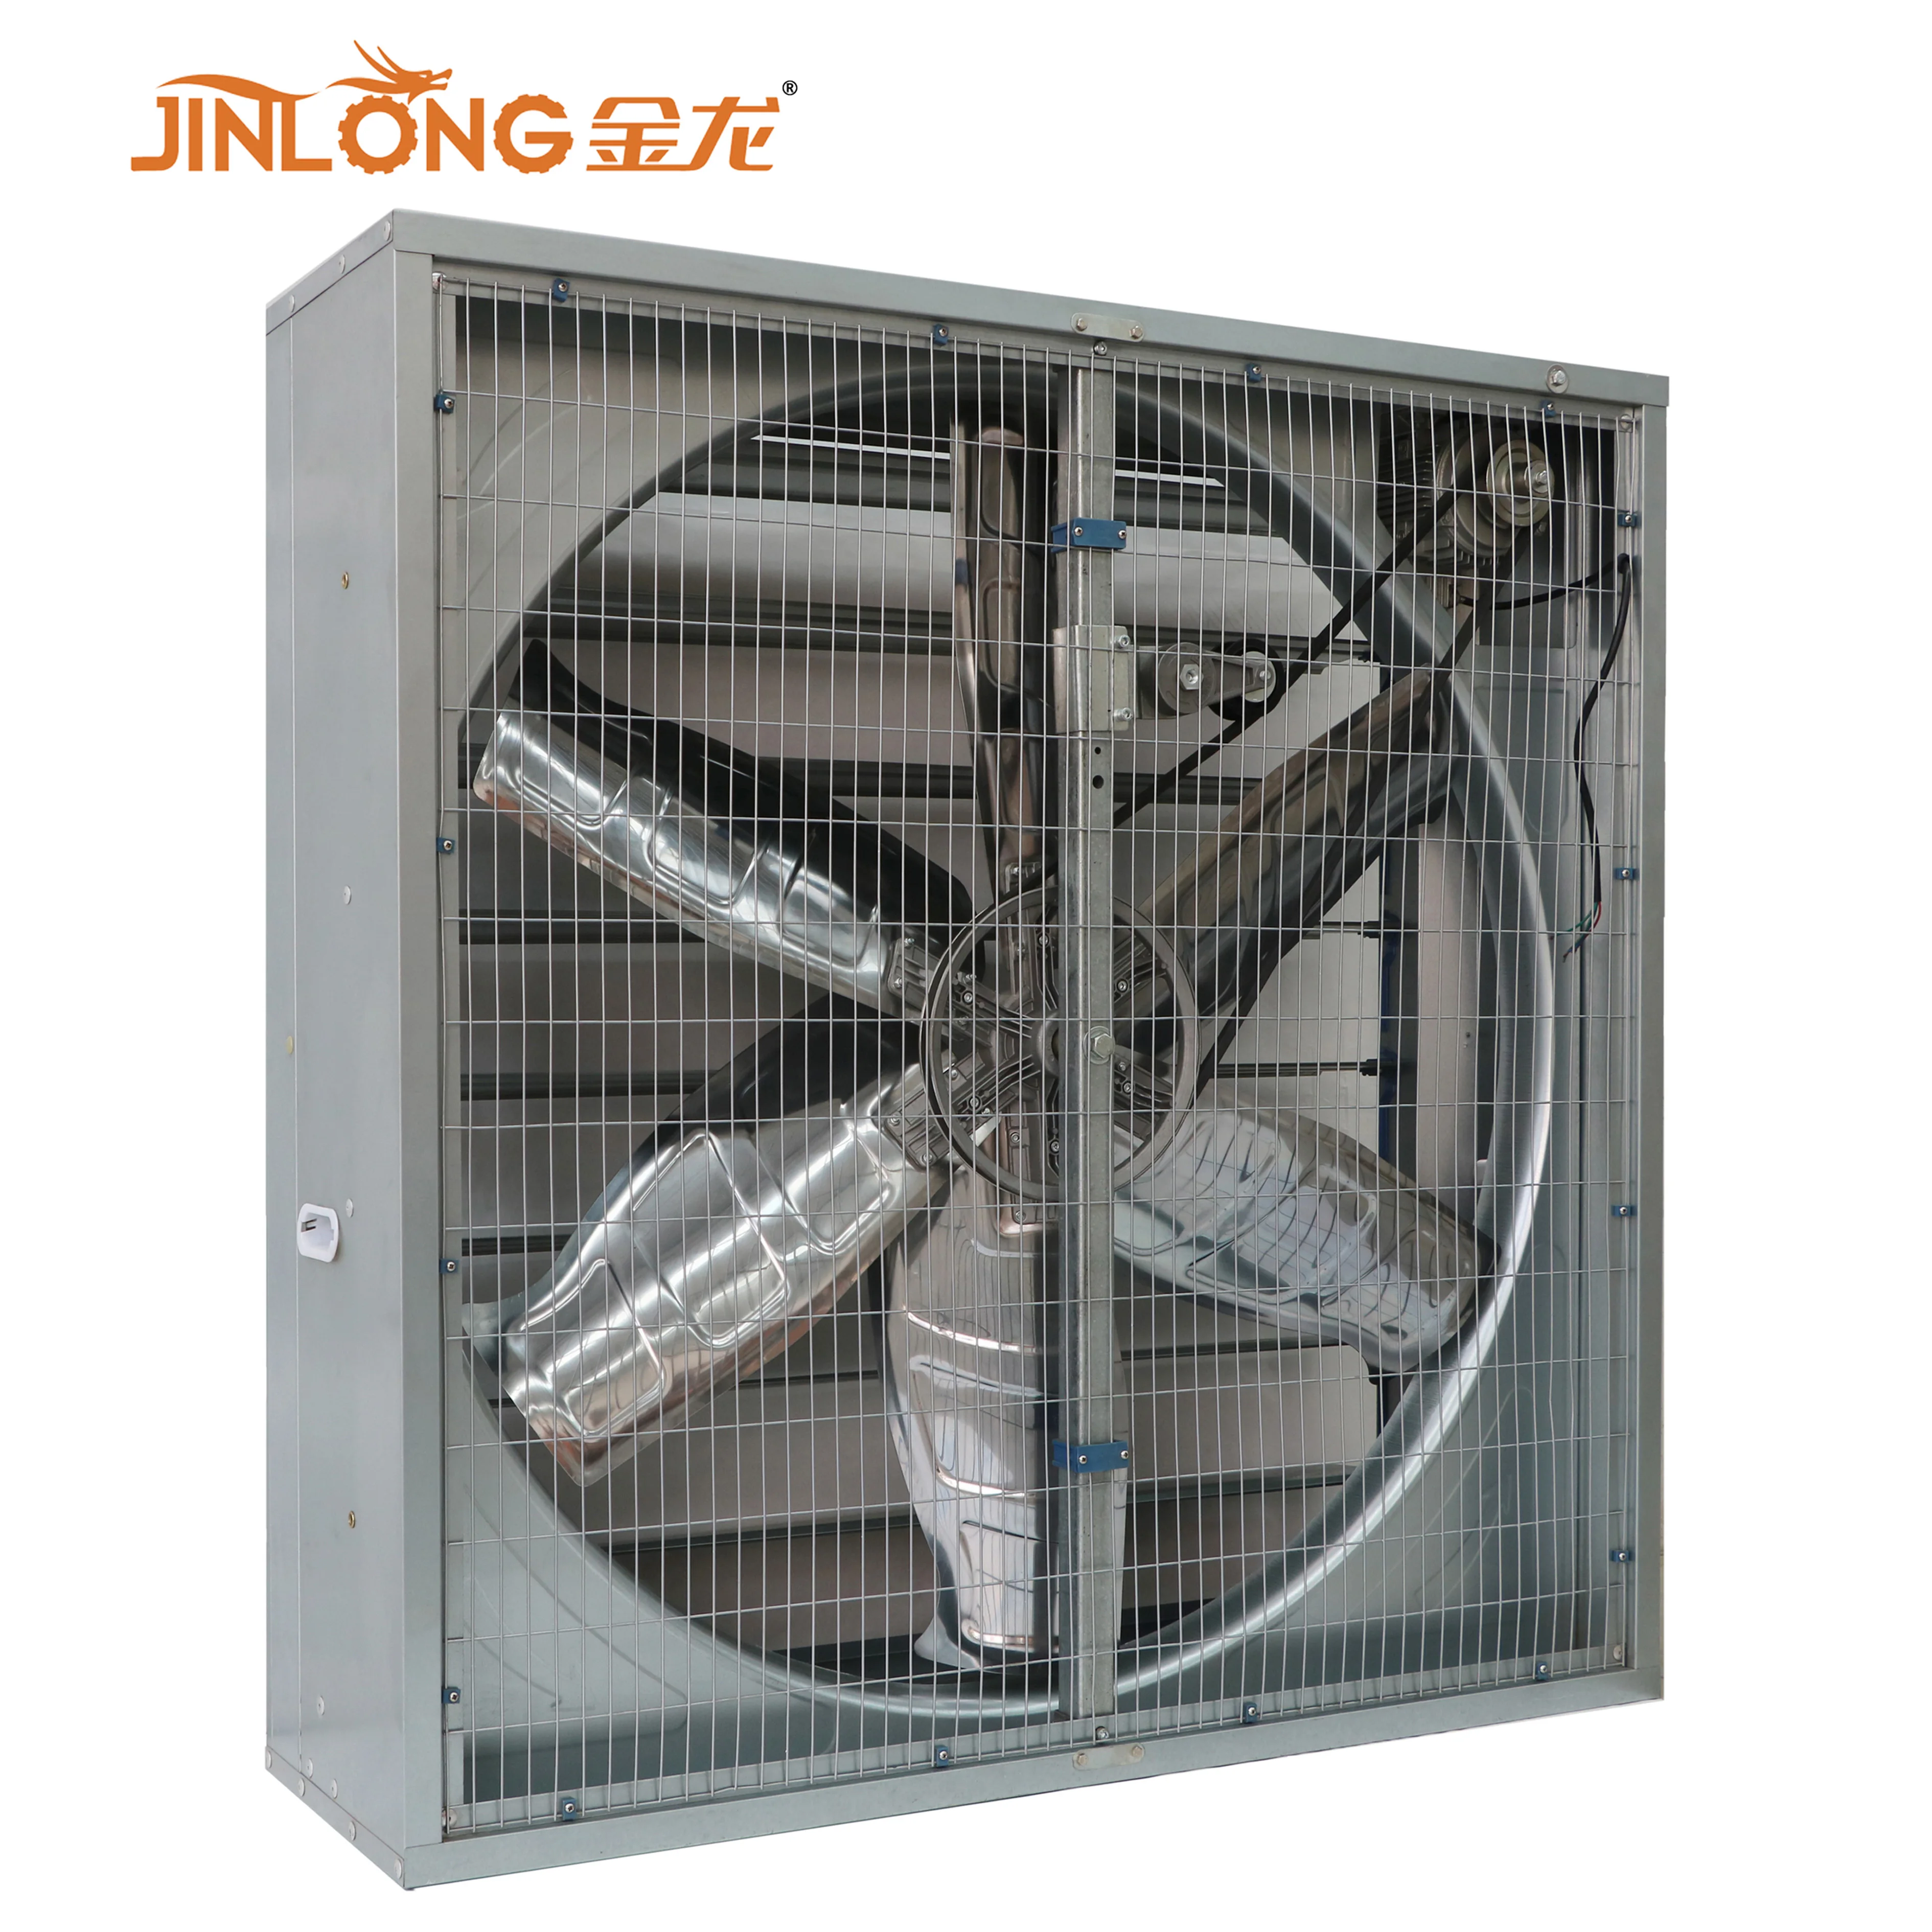 Promosi Jinlong Kipas Pembuangan Industri Tugas Berat Dengan Shutter Otomatis Buy Jinlong Khusus Gravitasi Louvred Debu Udara Ventilasi Rana Fan Untuk Rumah Unggas